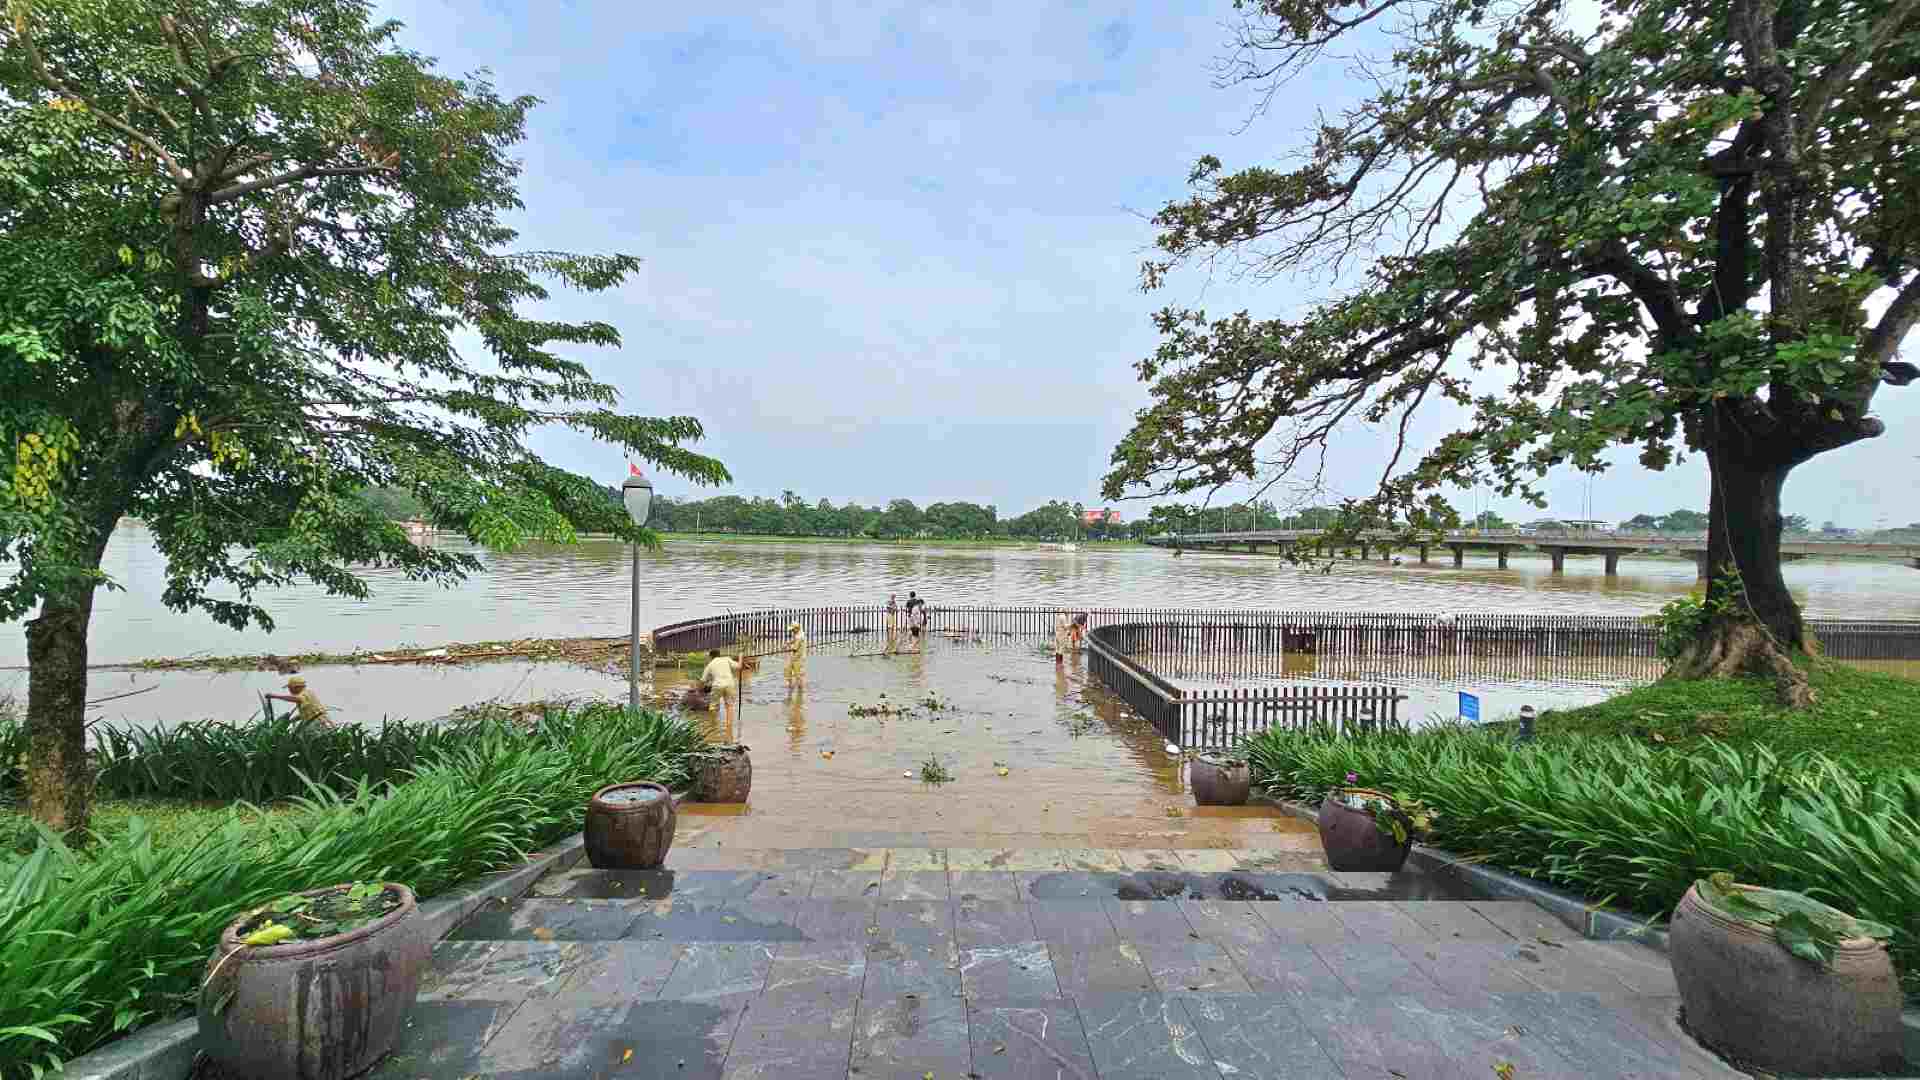 heo ông Lê Như Chinh, Giám đốc Trung tâm Công viên cây xanh TP. Huế, sáng ngày 19.10, sau khi mực nước trên sông Hương đang dần rút, trung tâm đã huy động toàn bộ nhân lực, trong đó có khoảng 100 nhân công, 16 máy bơm để dọn dẹp nhiều địa điểm trên sông Hương. 